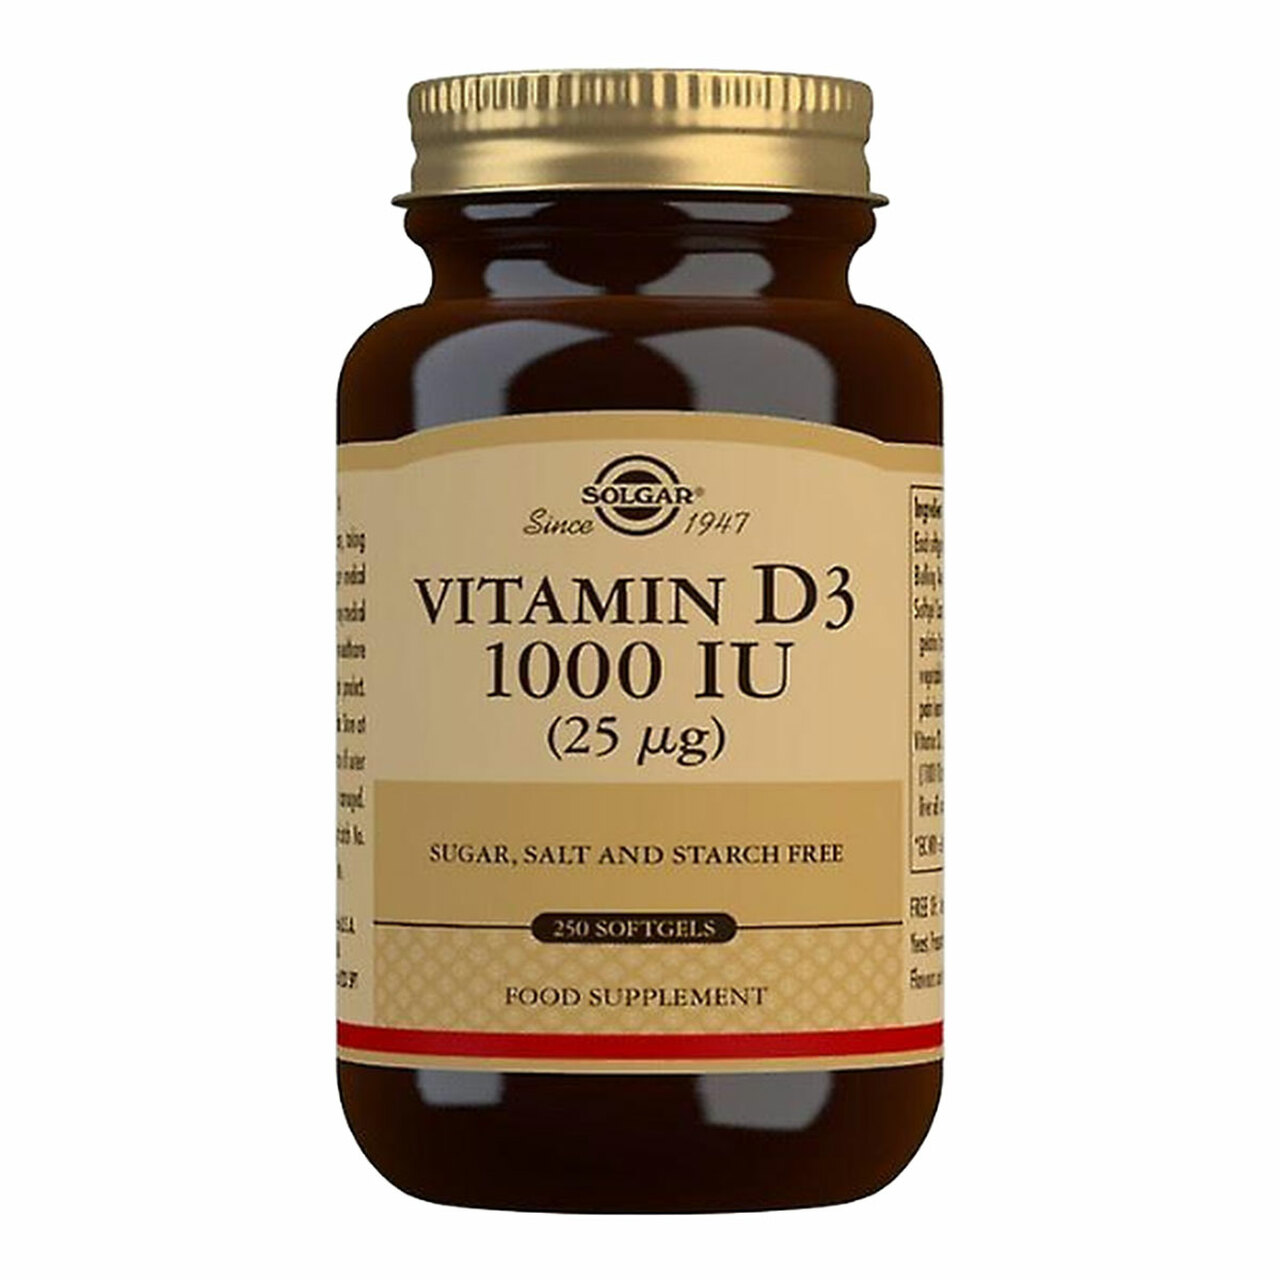 Solgar Vitamin D3 1000 IU 250 Softgels